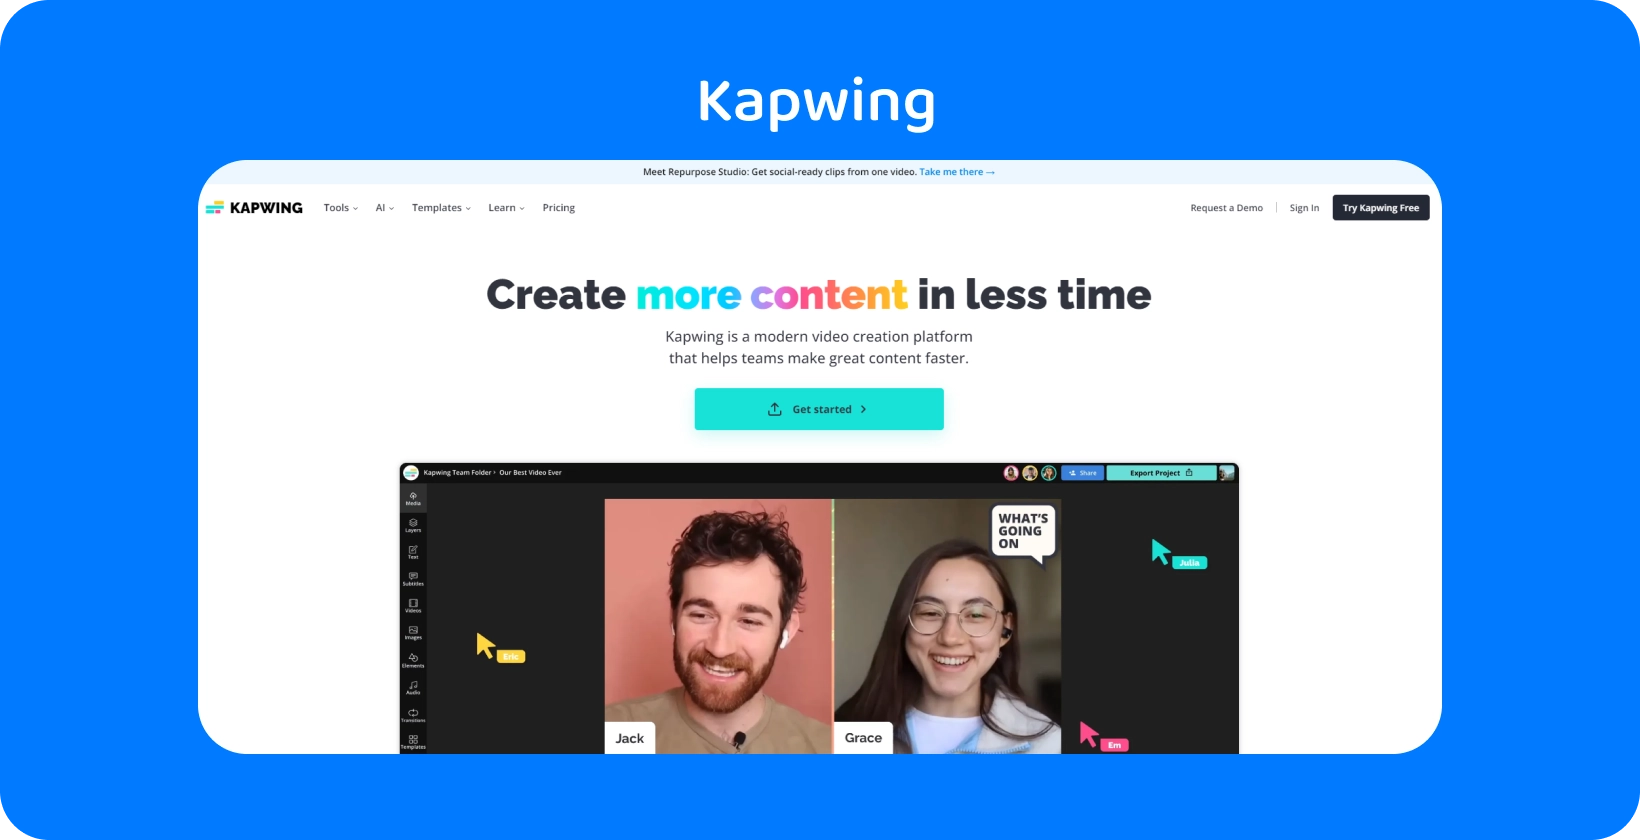 Kapwing undertextredigerare med ett användarvänligt gränssnitt som hjälper team att skapa effektivt innehåll.